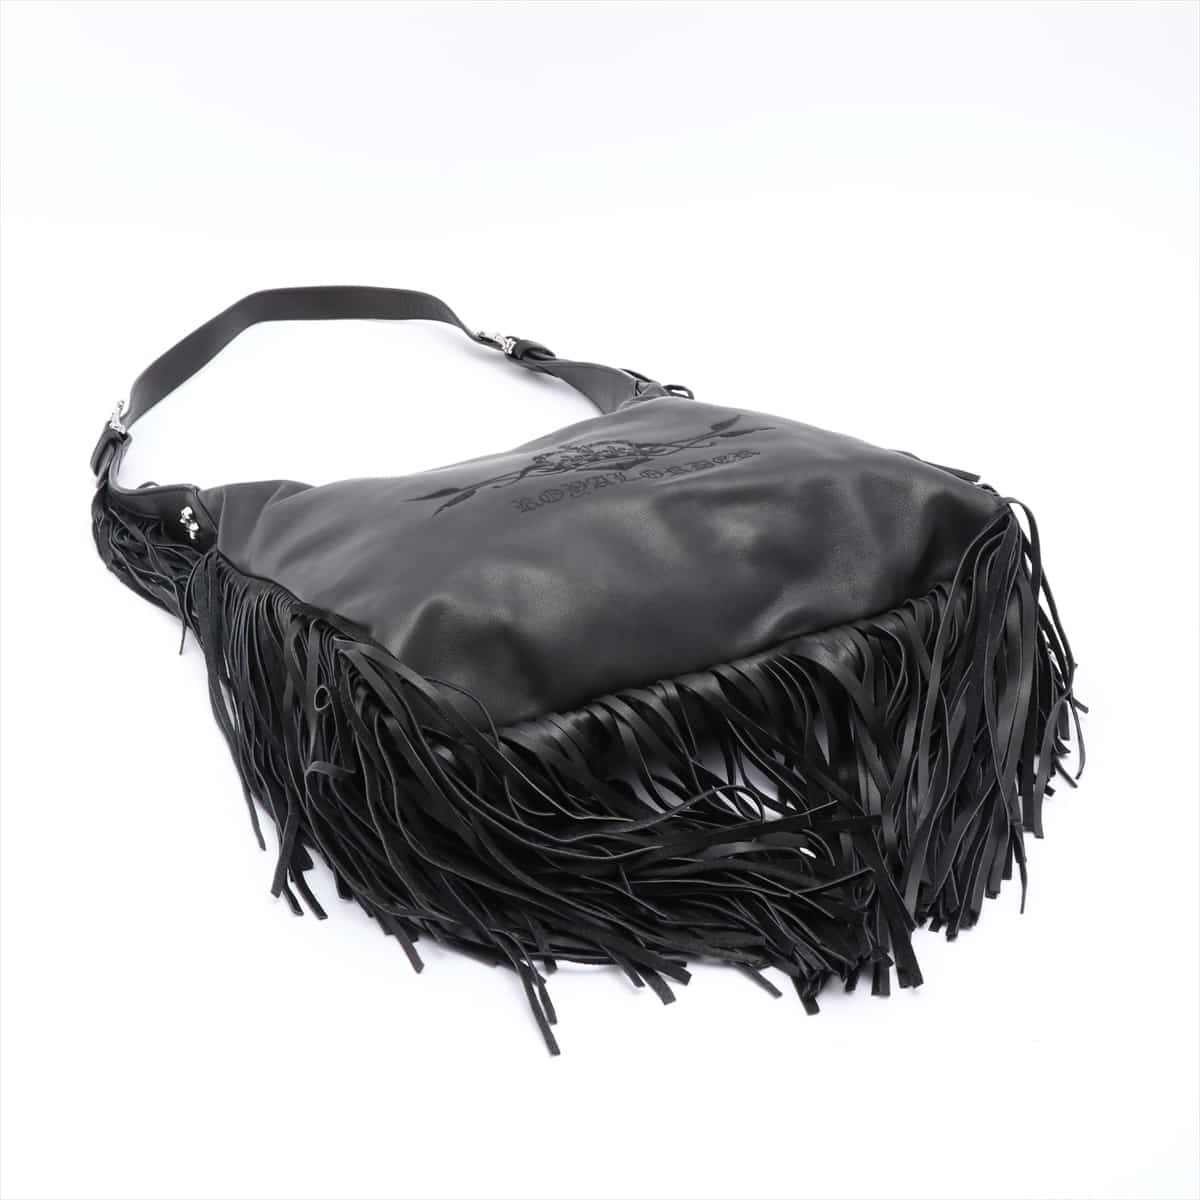 ROYAL ORDER Shoulder bag Leather Black